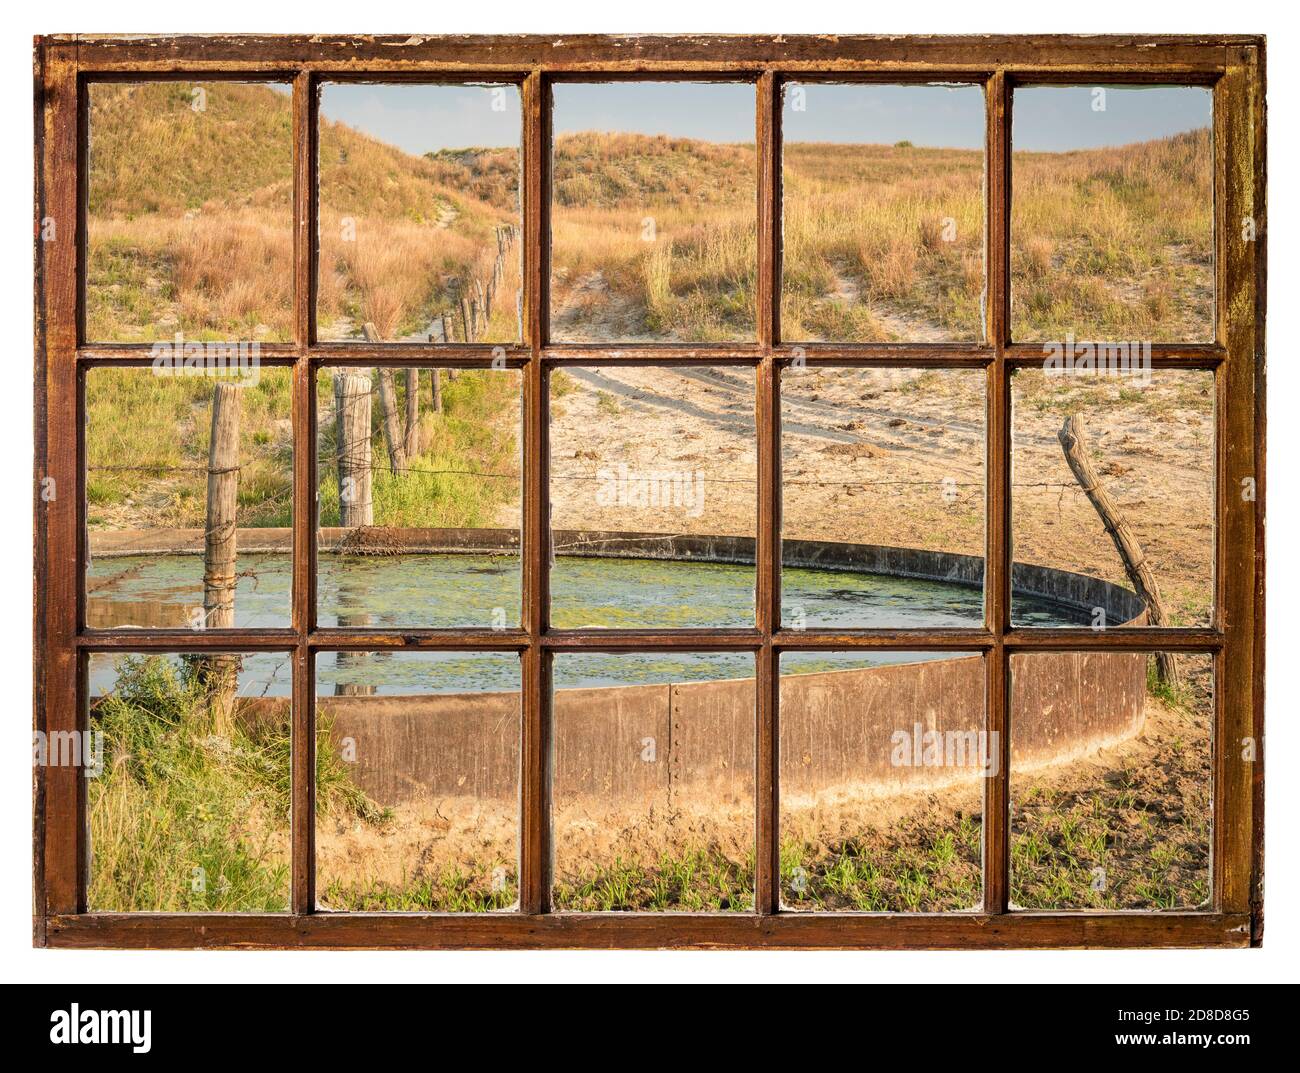 Trou de boisson de bétail dans une prairie de Nebraska Sandhills - paysage d'automne le matin vu d'une fenêtre à guillotine vintage Banque D'Images